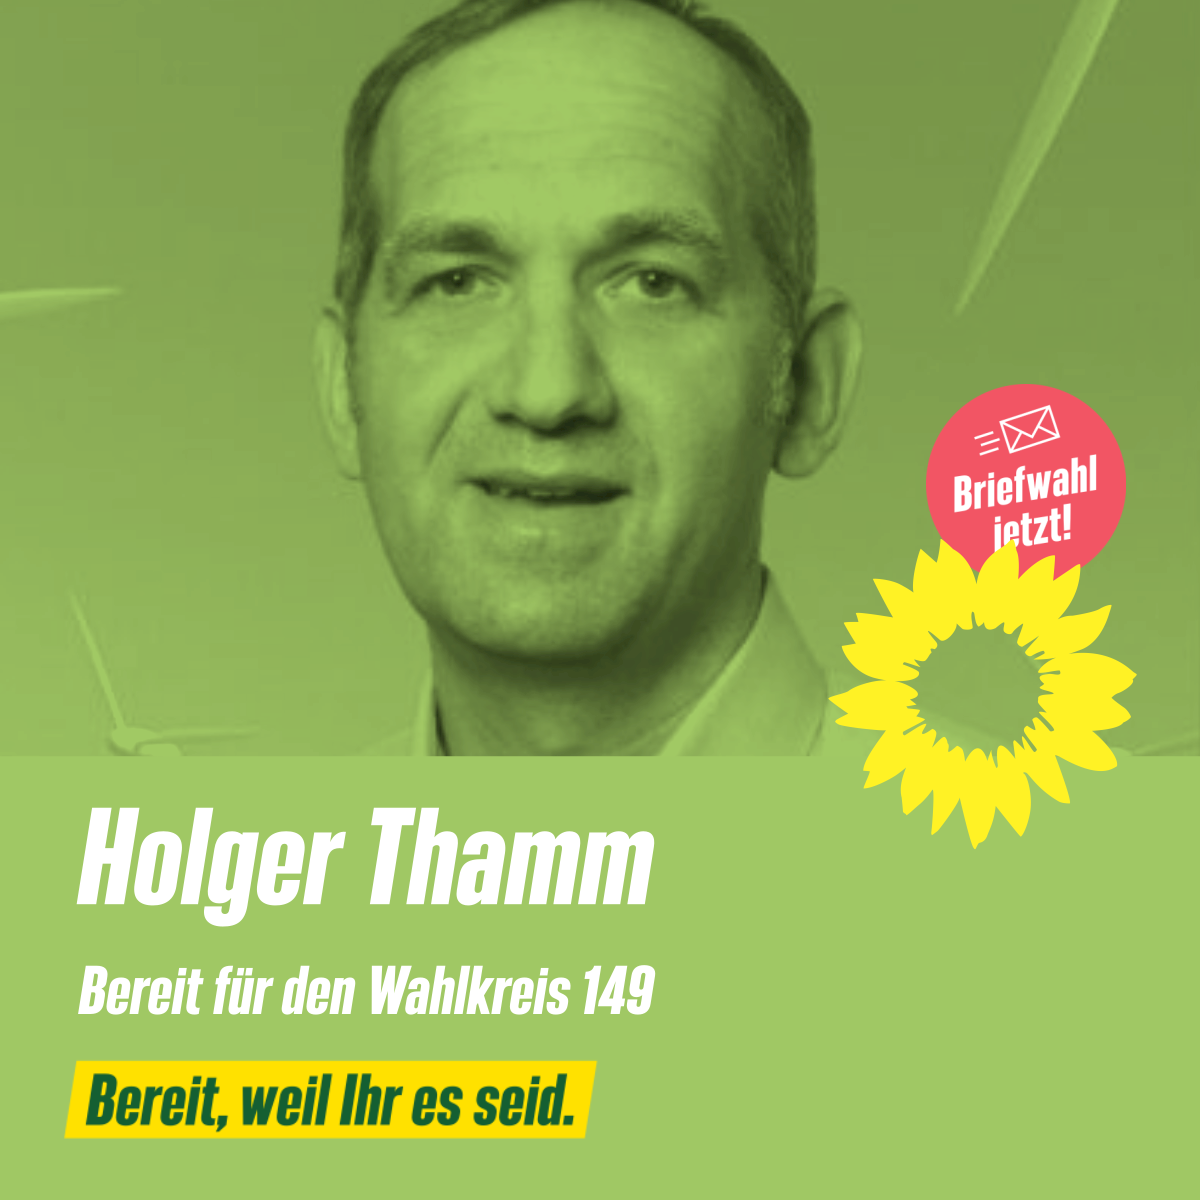 Holger Thamm, BTW-Kandidat 2021 für den Wahlkreis 149